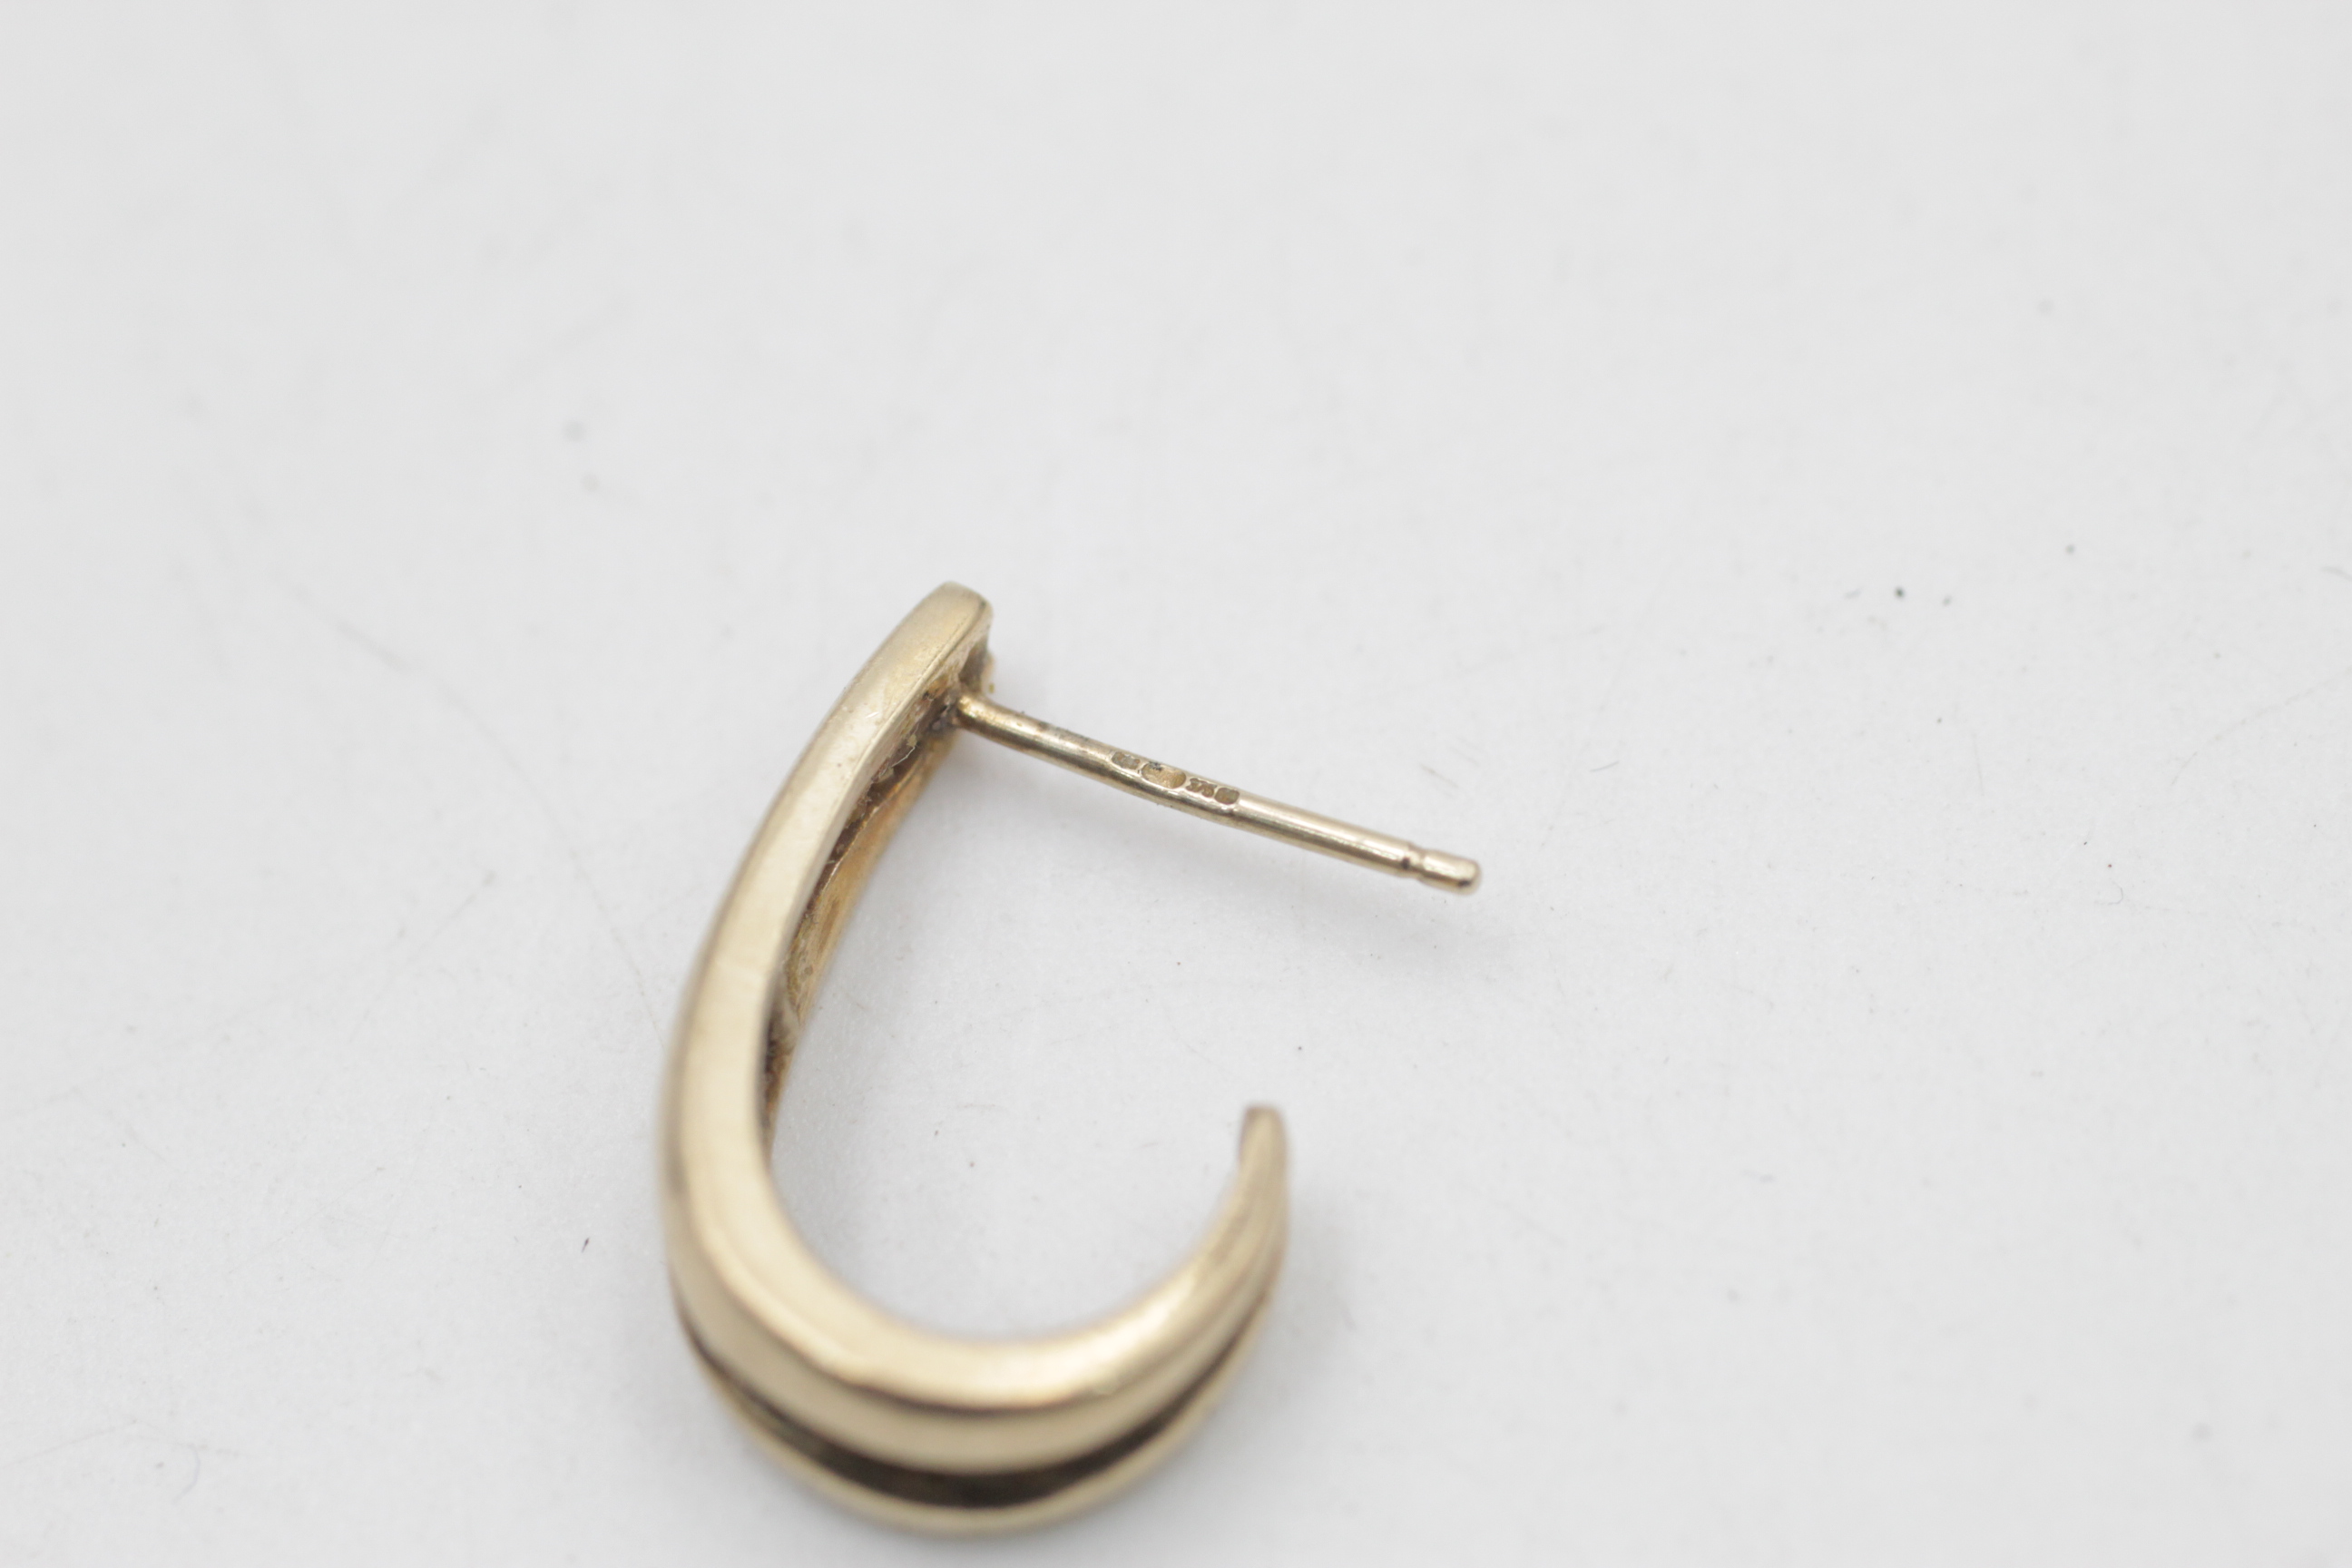 9ct gold vintage diamond channel half-hoop earrings (3.6g) - Image 6 of 6